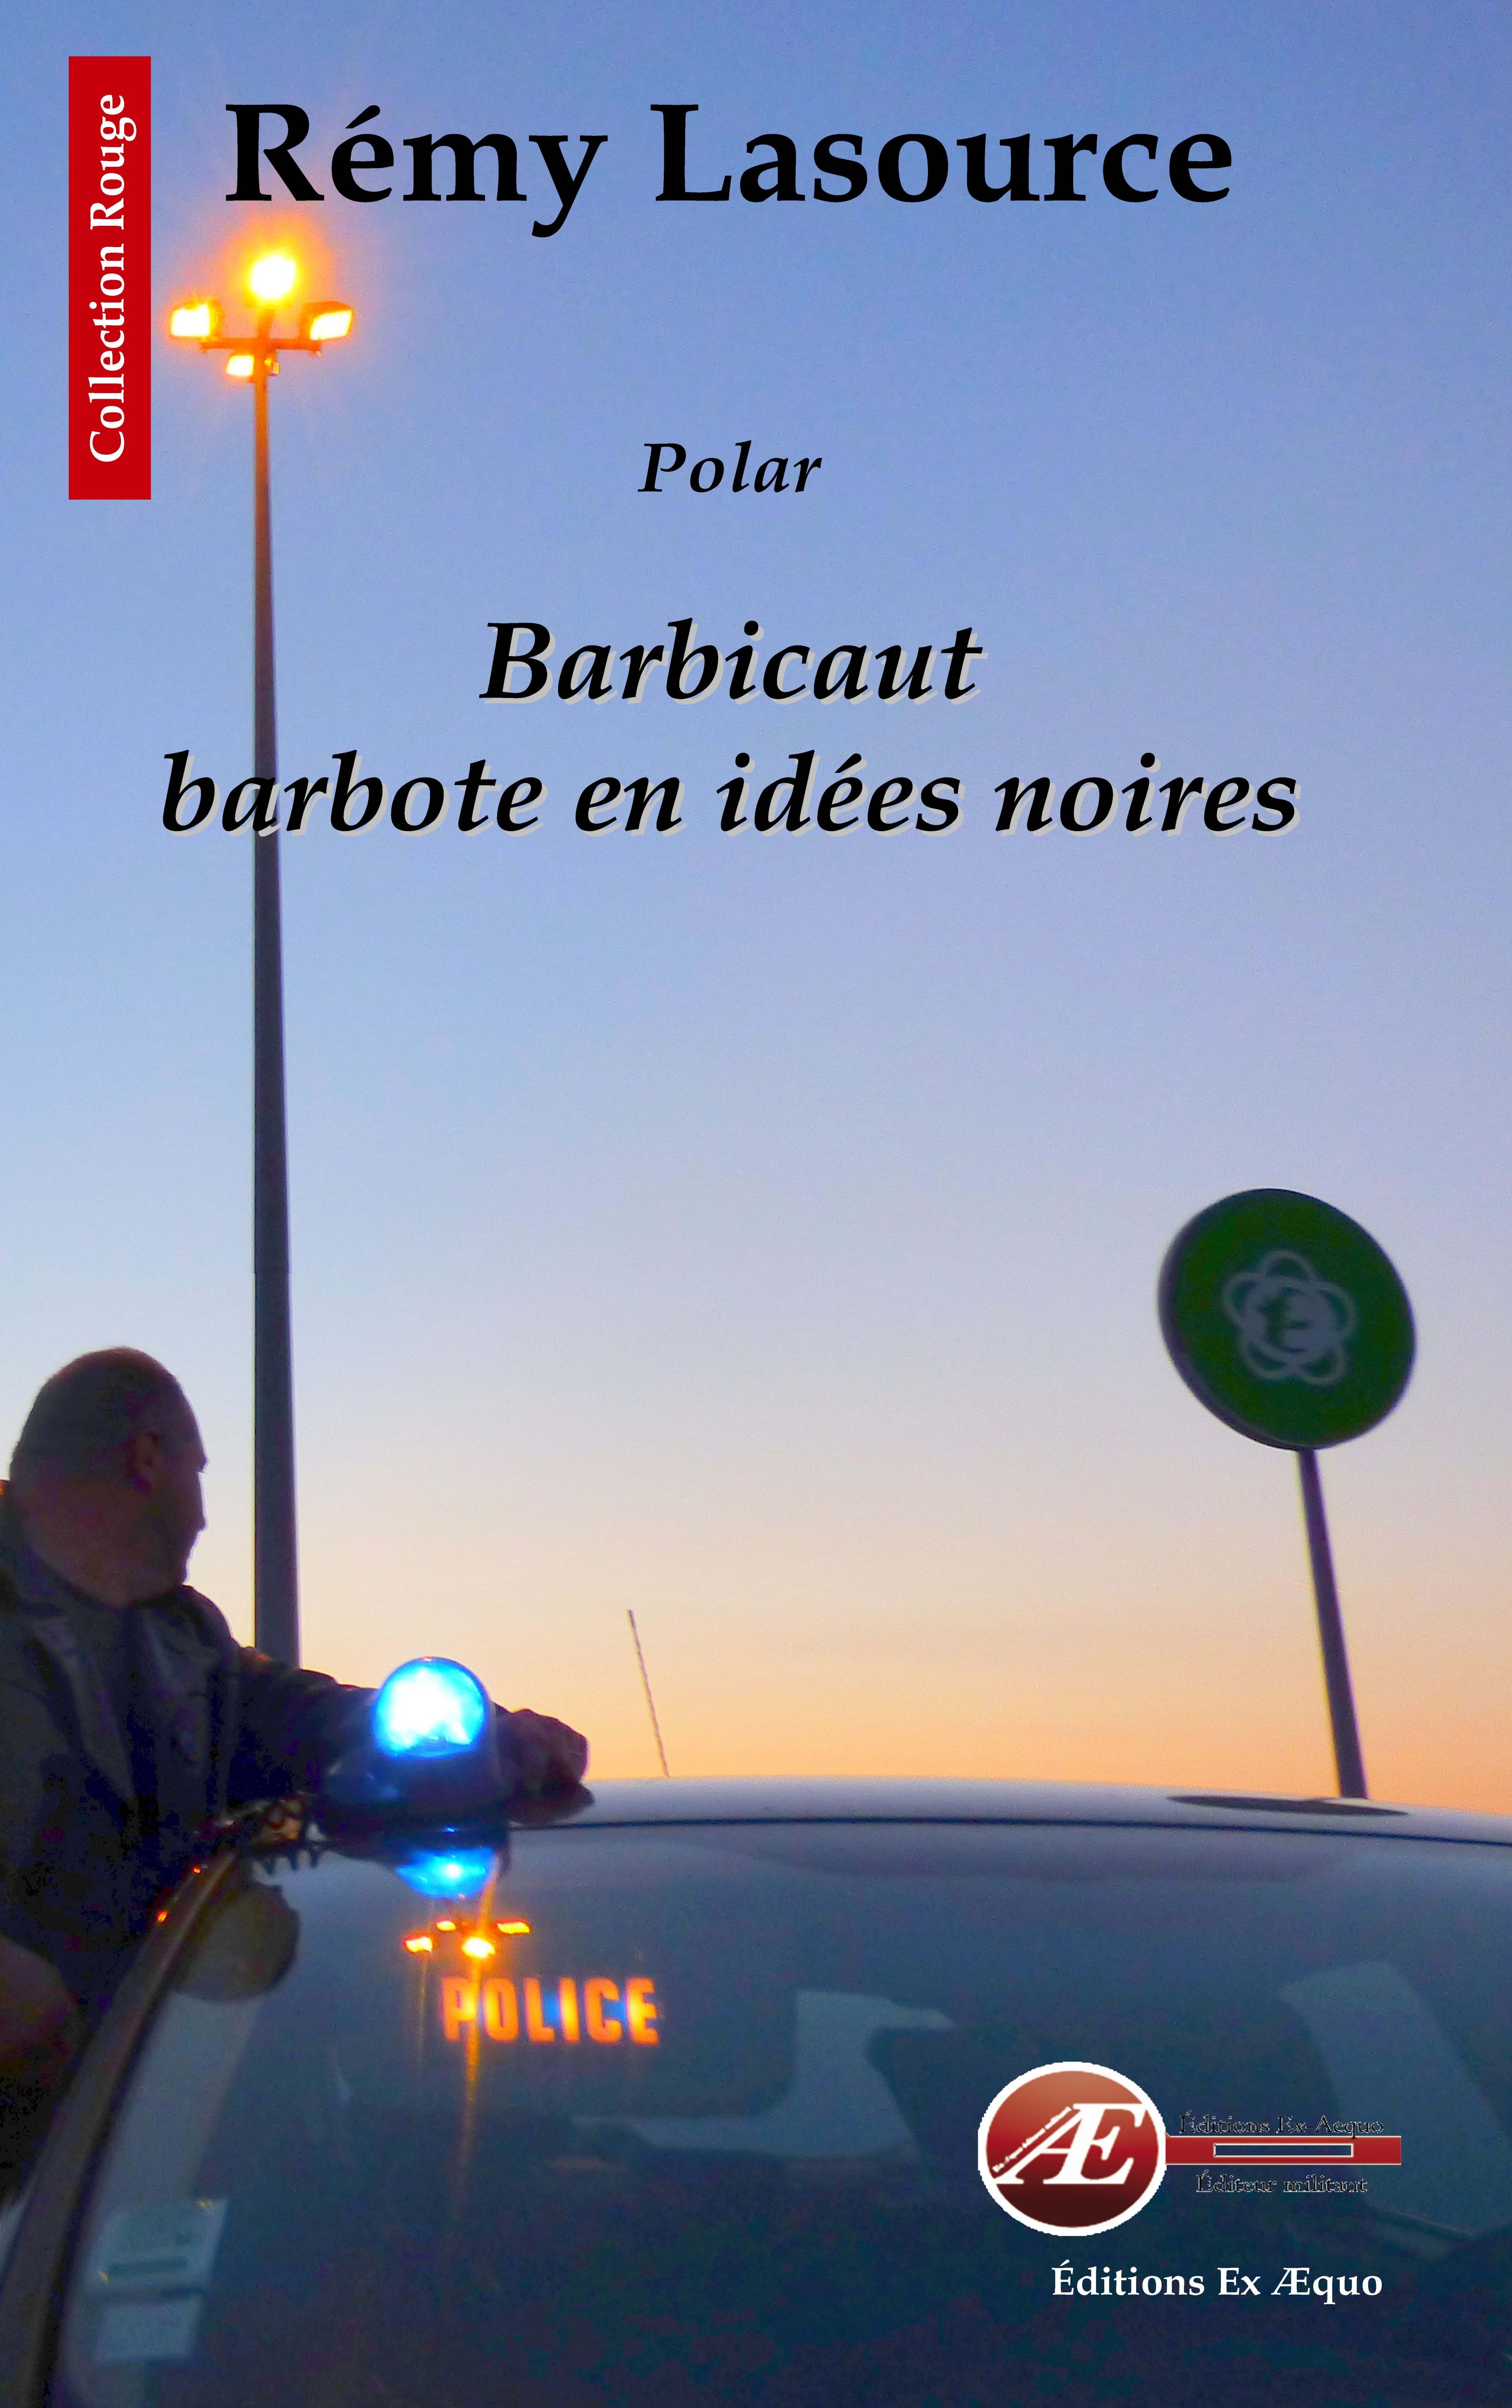 You are currently viewing Barbicaut barbote en idées noires, de Rémy Lasource